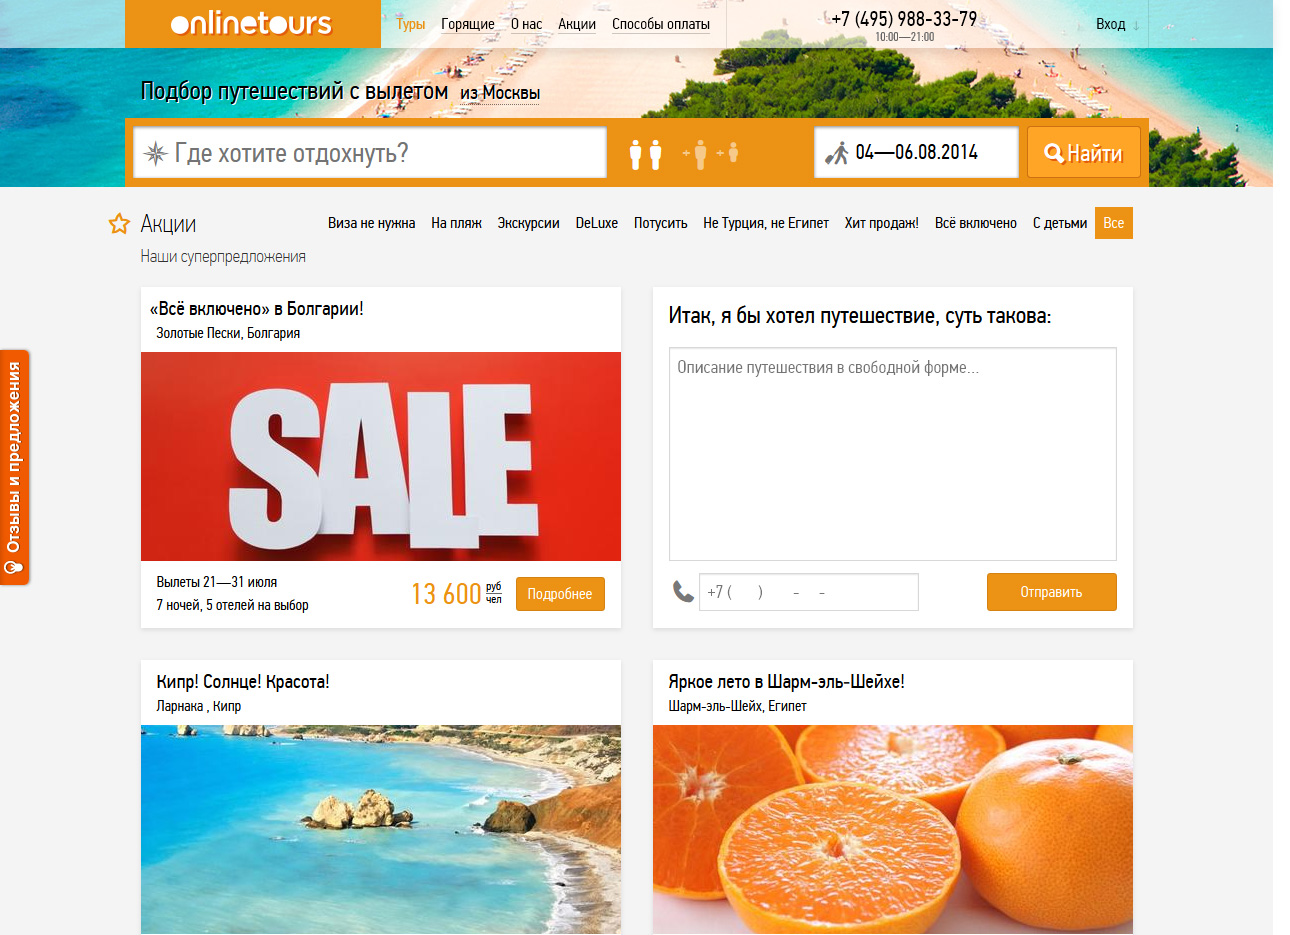 Инвесторы бросились в онлайн продажи туров: OnlineTours.ru привлек $7 млн, вслед за Travelata.ru, на фоне дефолта «Невы» c долгом в 9 млн евро